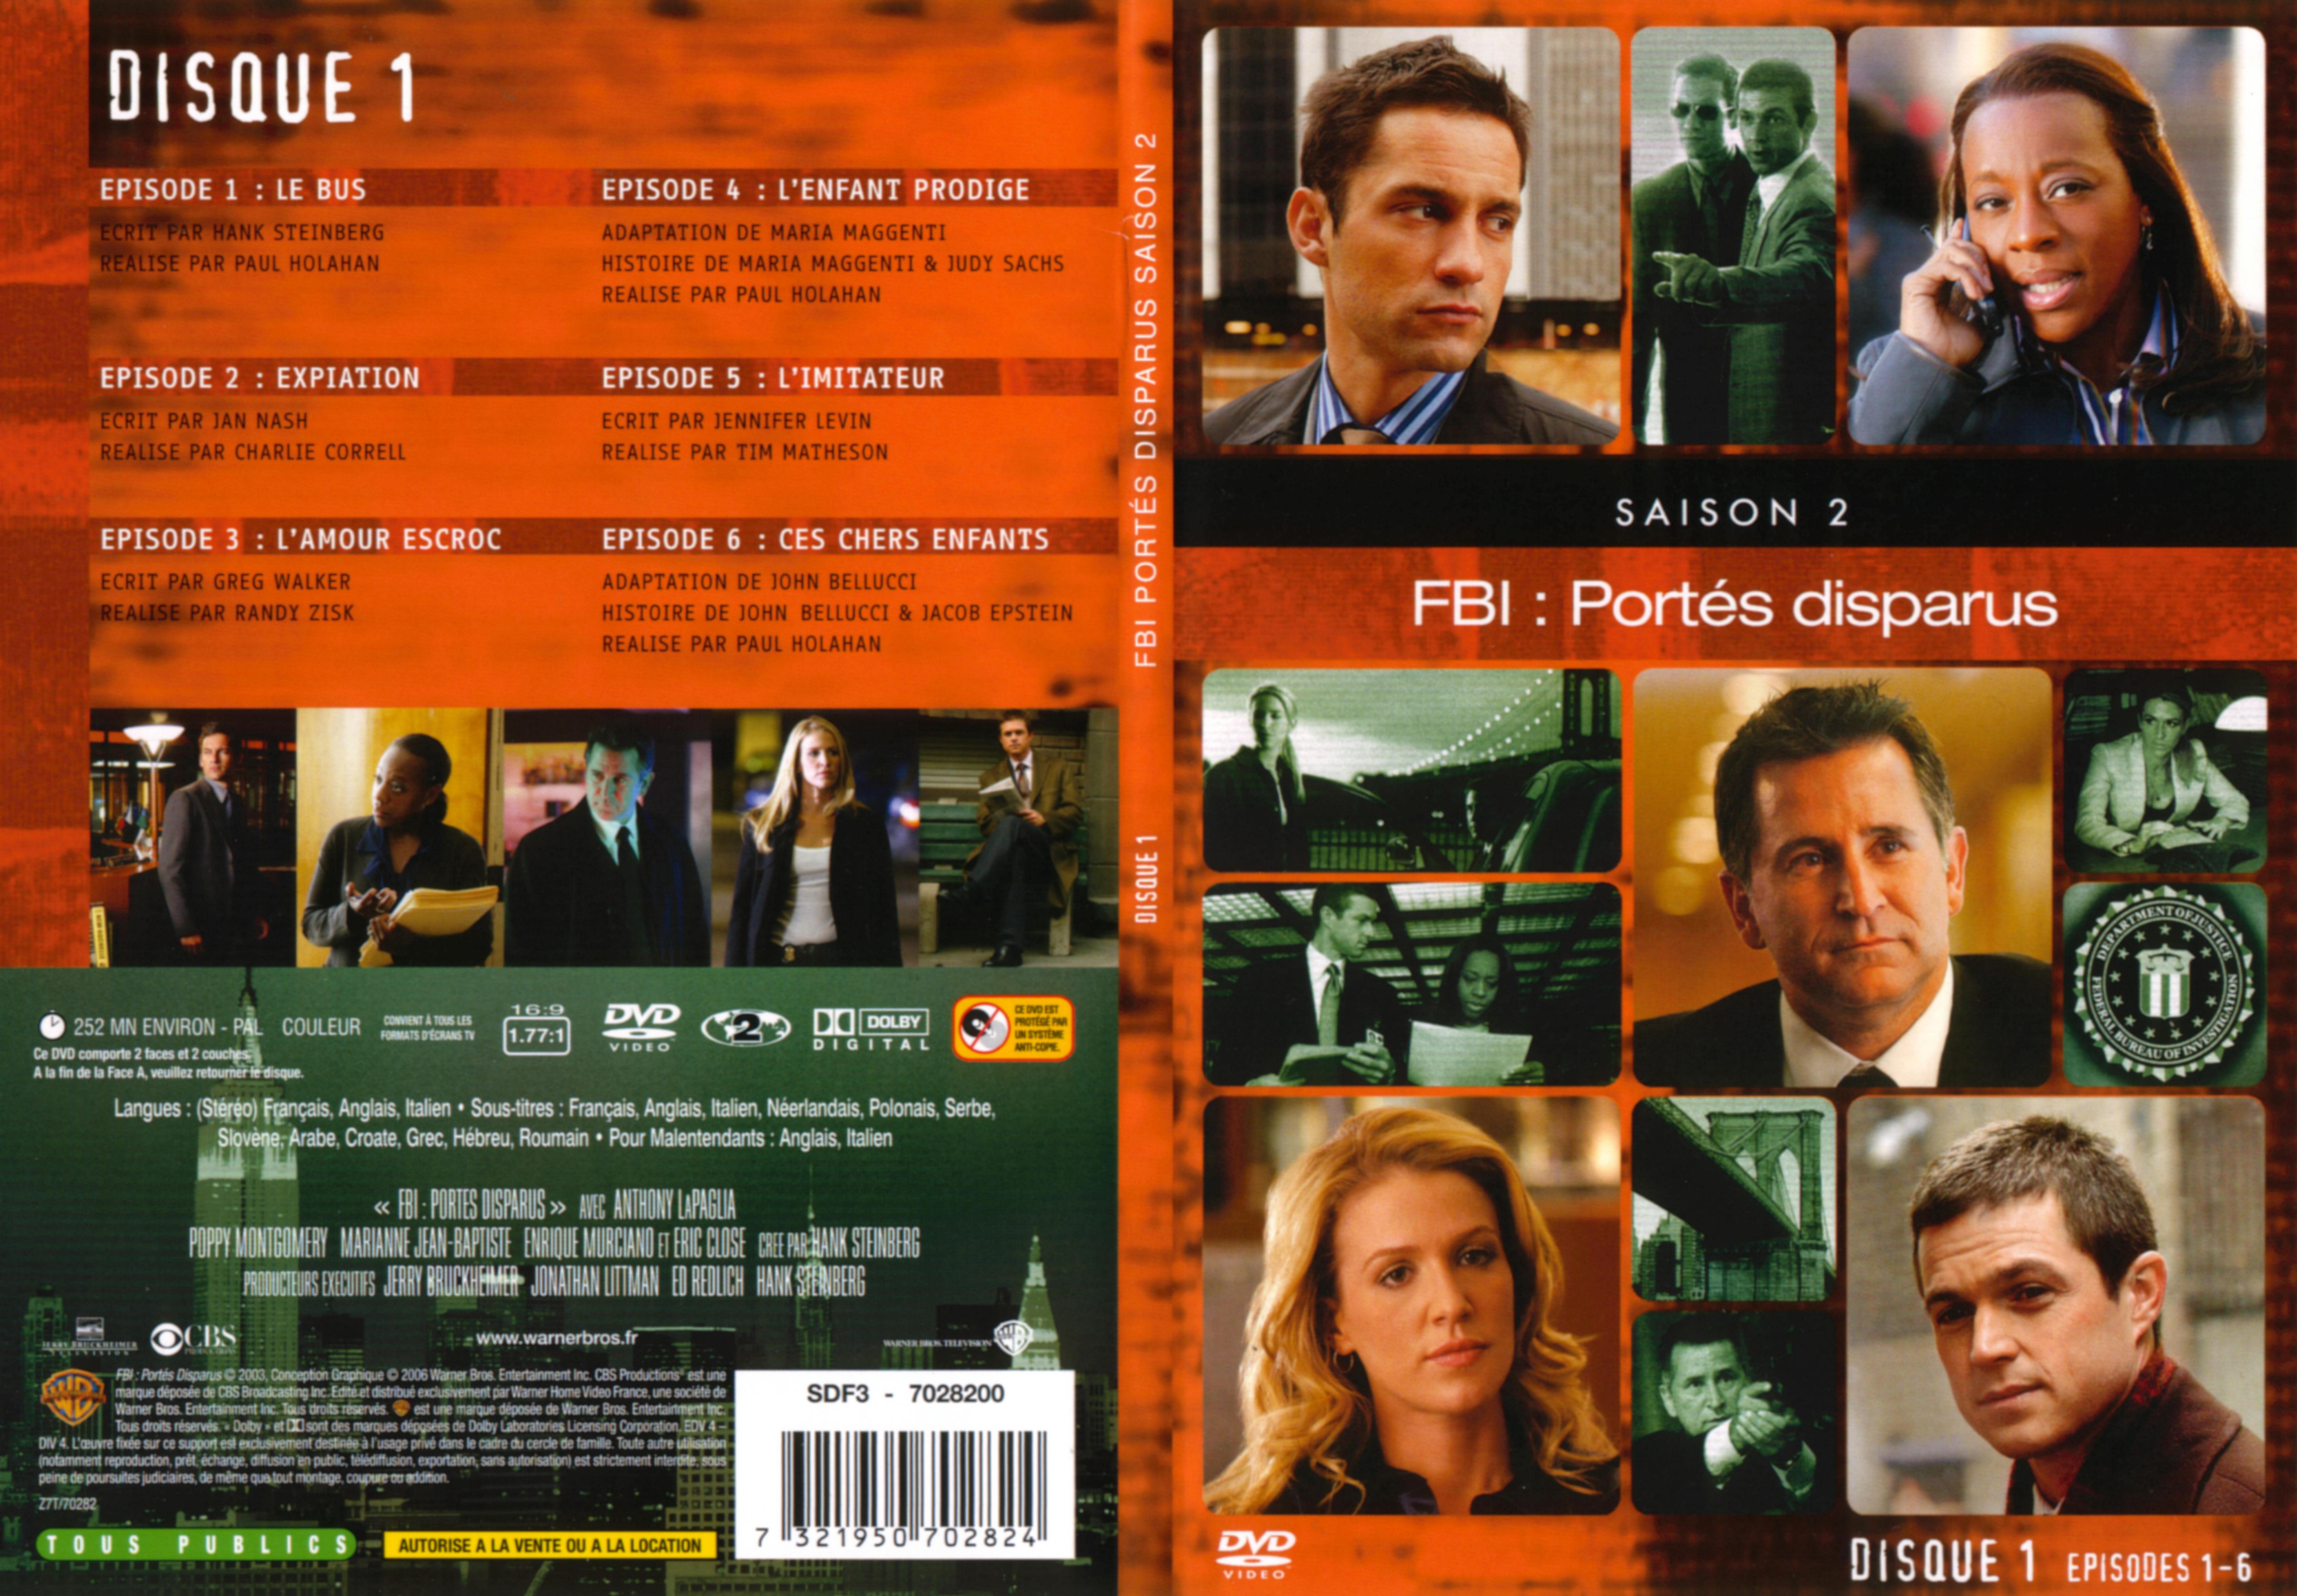 Jaquette DVD FBI ports disparus Saison 2 vol 1